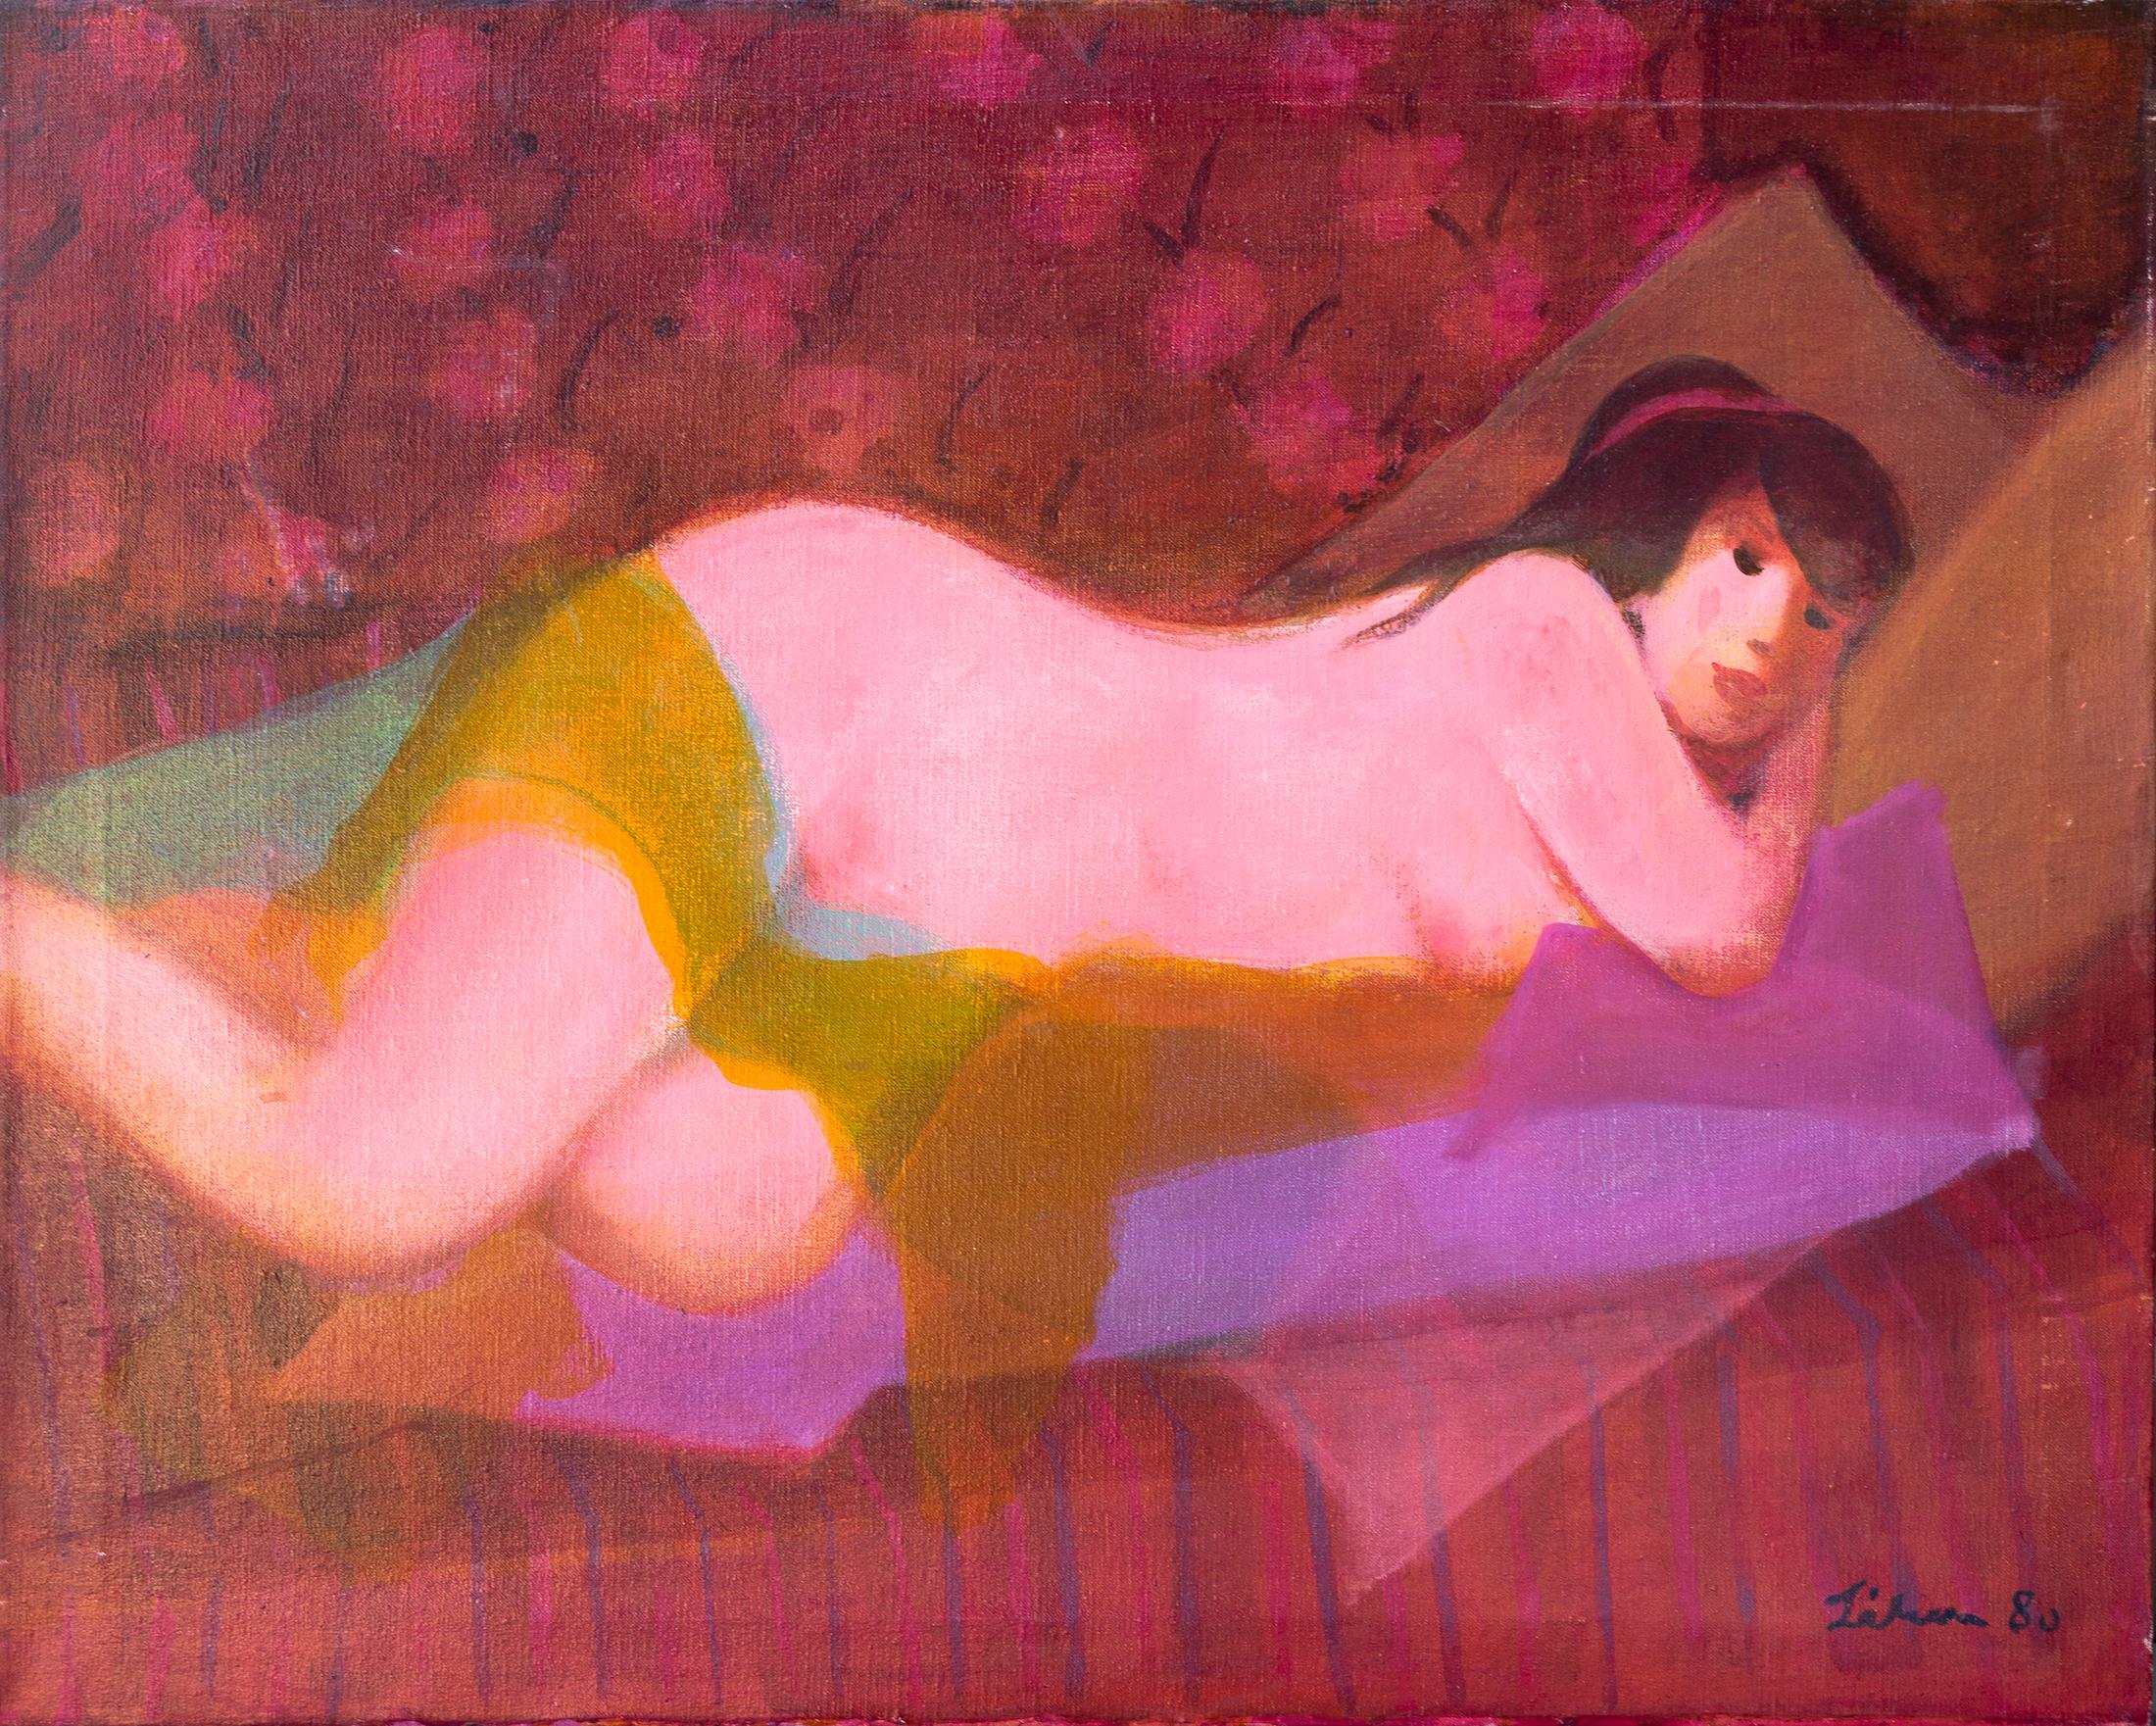 Gustav Likan Nude Painting - "Nude" Colourist Modern Figurative Paintings